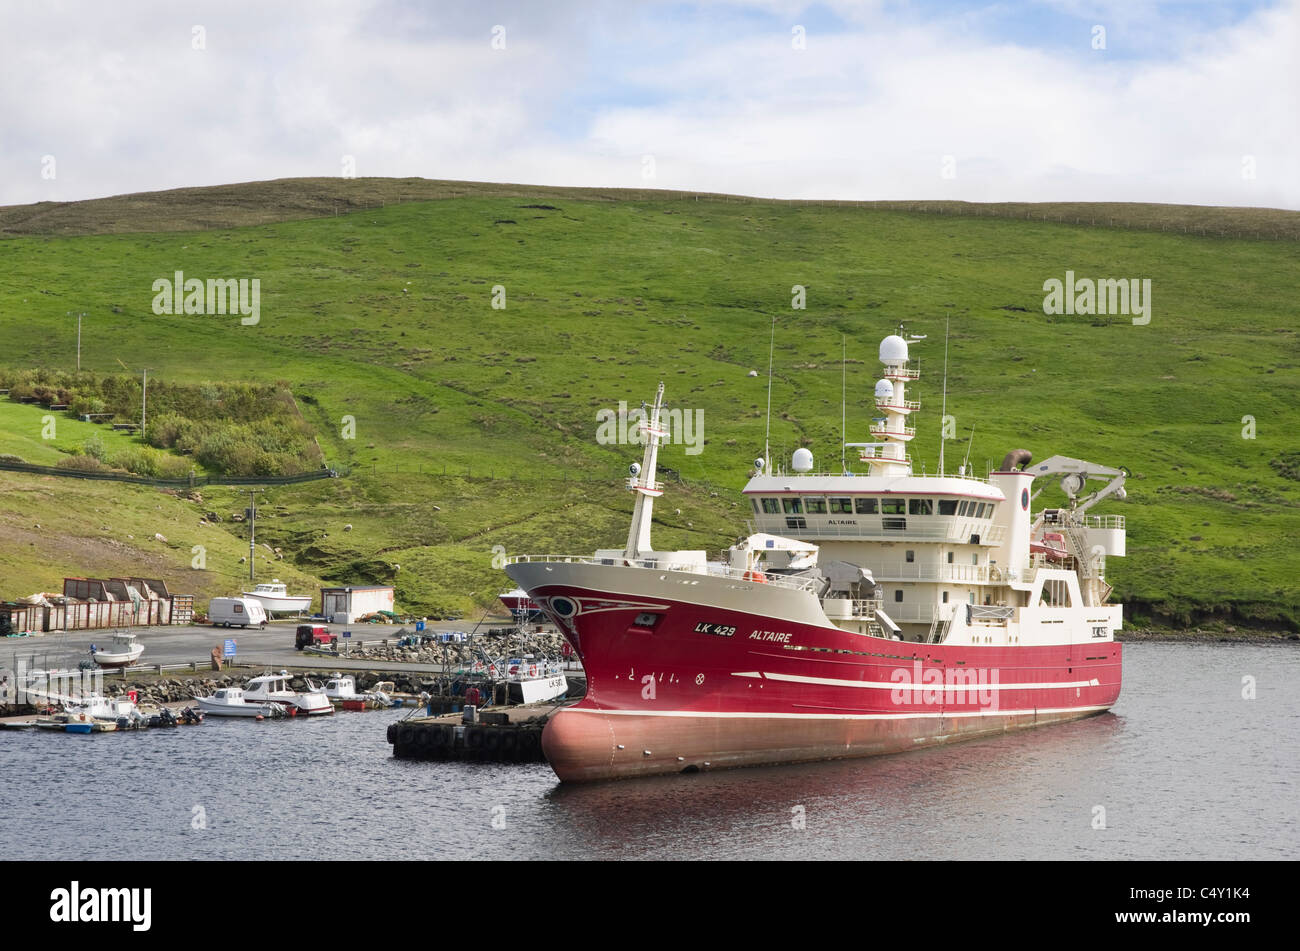 Pelagische Hochseefischen Schiff Trawler Altaire vertäut im Hafen. Collafirth, Northmavine, Shetland Islands, Schottland, UK, Großbritannien. Stockfoto